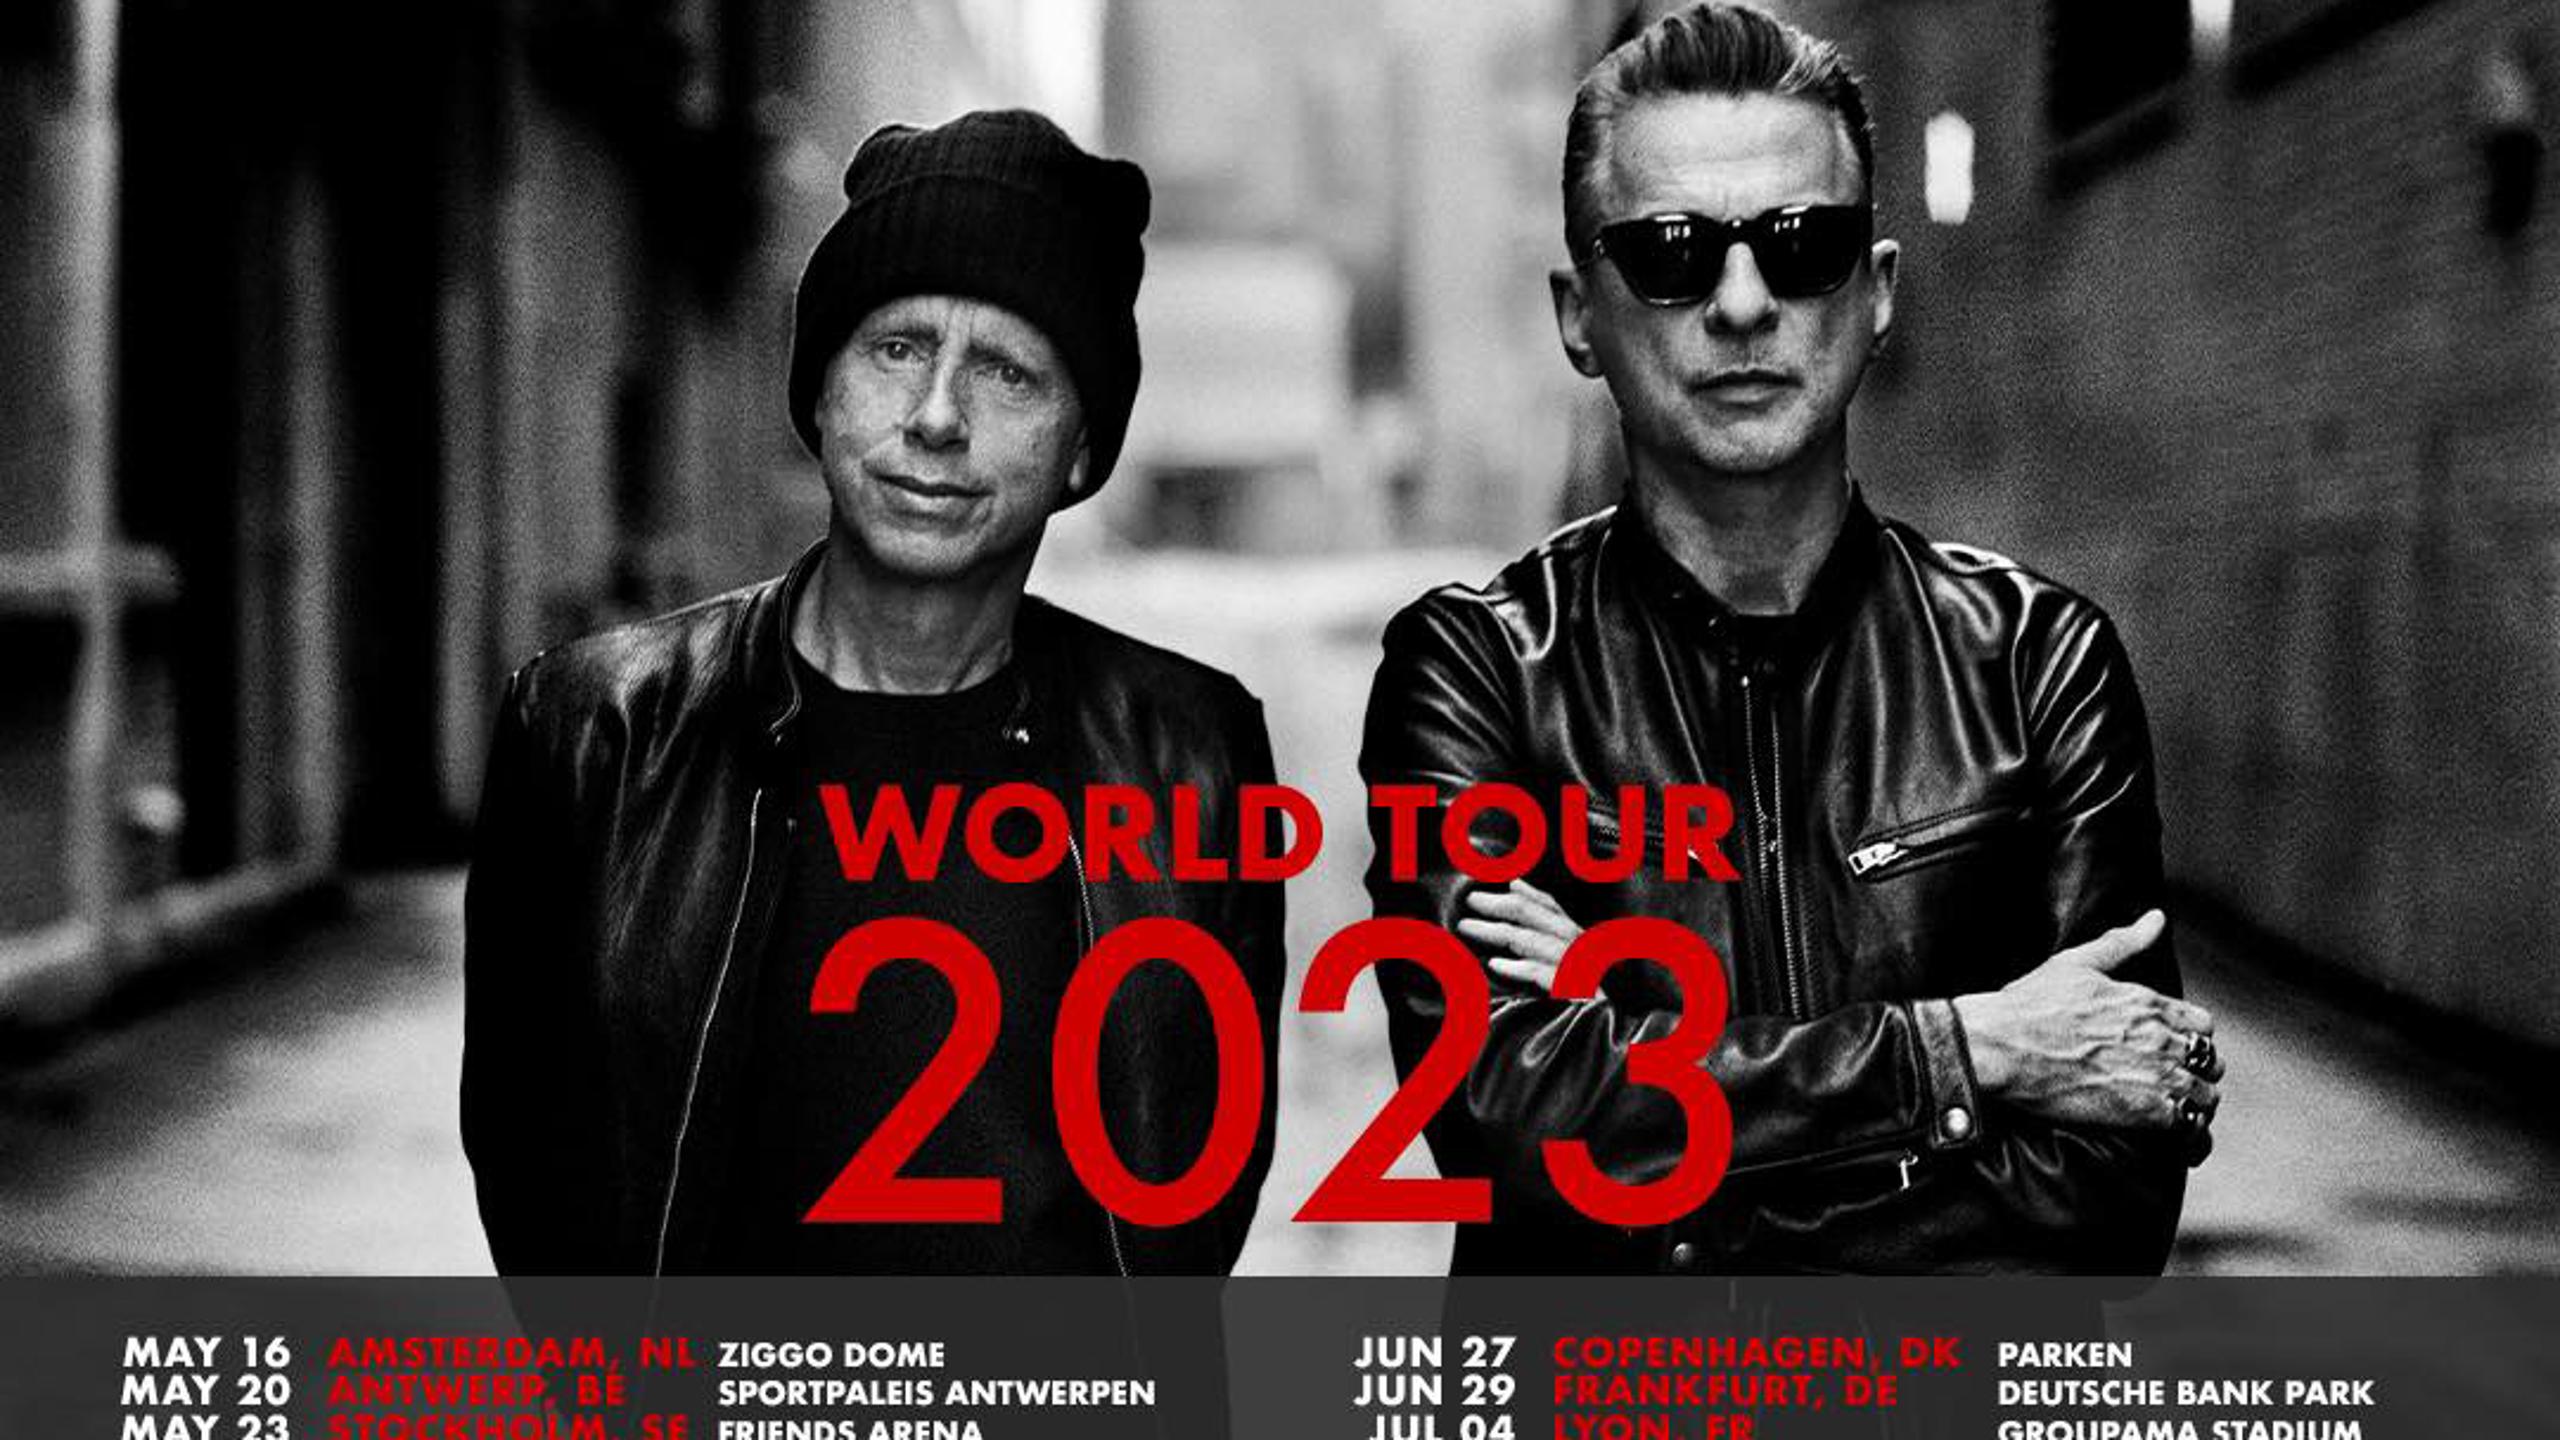 depeche mode uk tour tickets